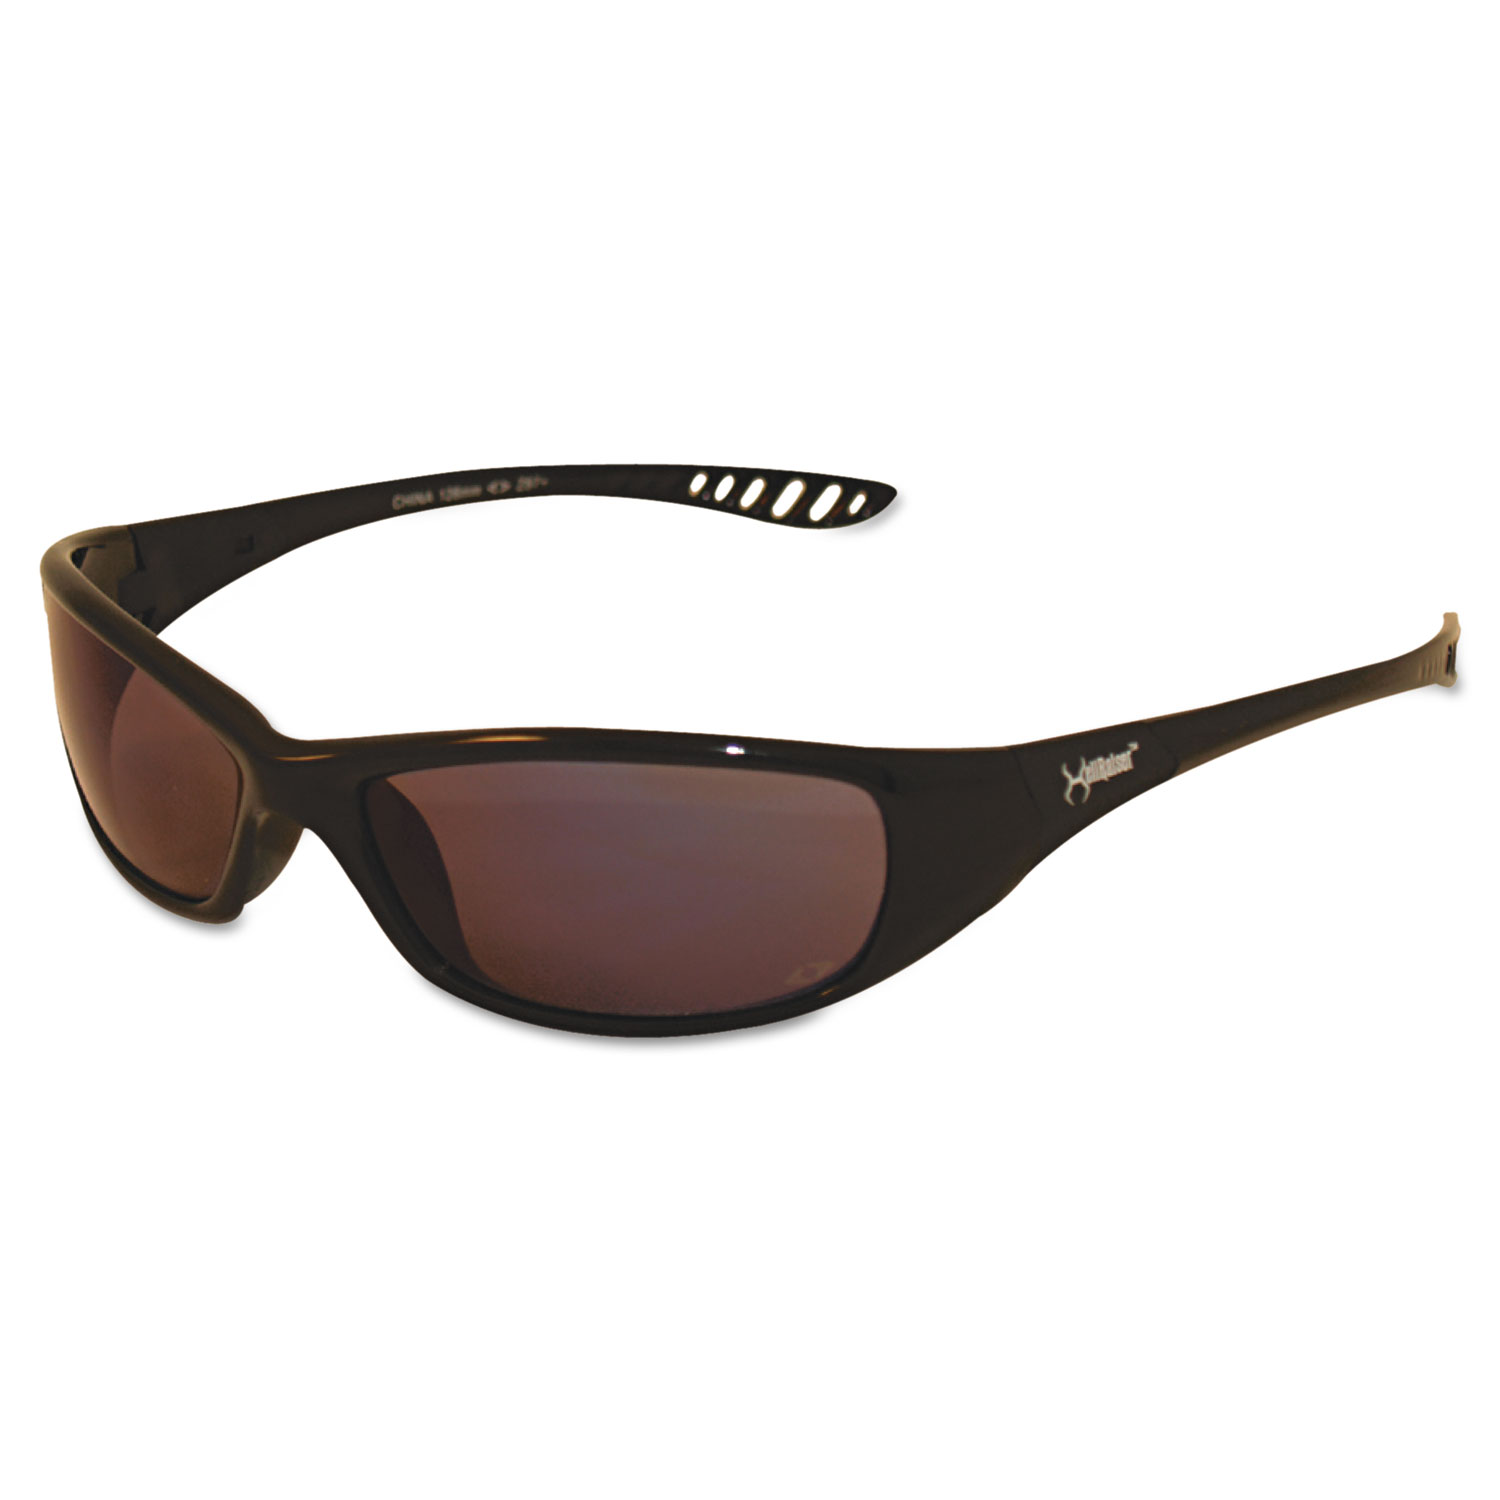  KleenGuard 25716 V40 HellRaiser Safety Glasses, Black Frame, Indoor/Outdoor Lens (KCC25716) 